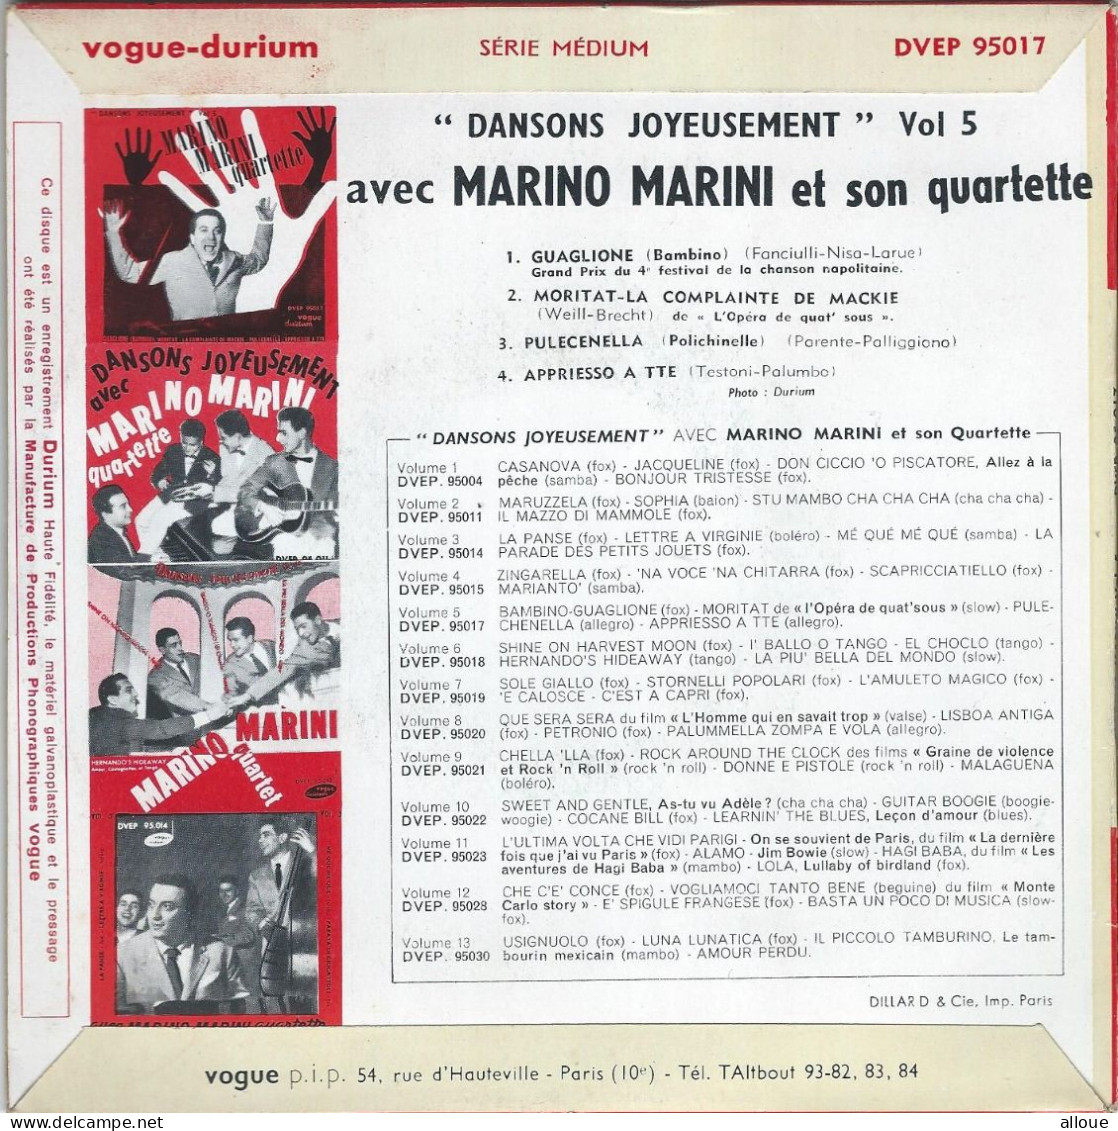 MARINO MARINI QUARTETTE - FR EP - GUAGLIONE (BAMBINO) + 3 - Altri - Musica Italiana